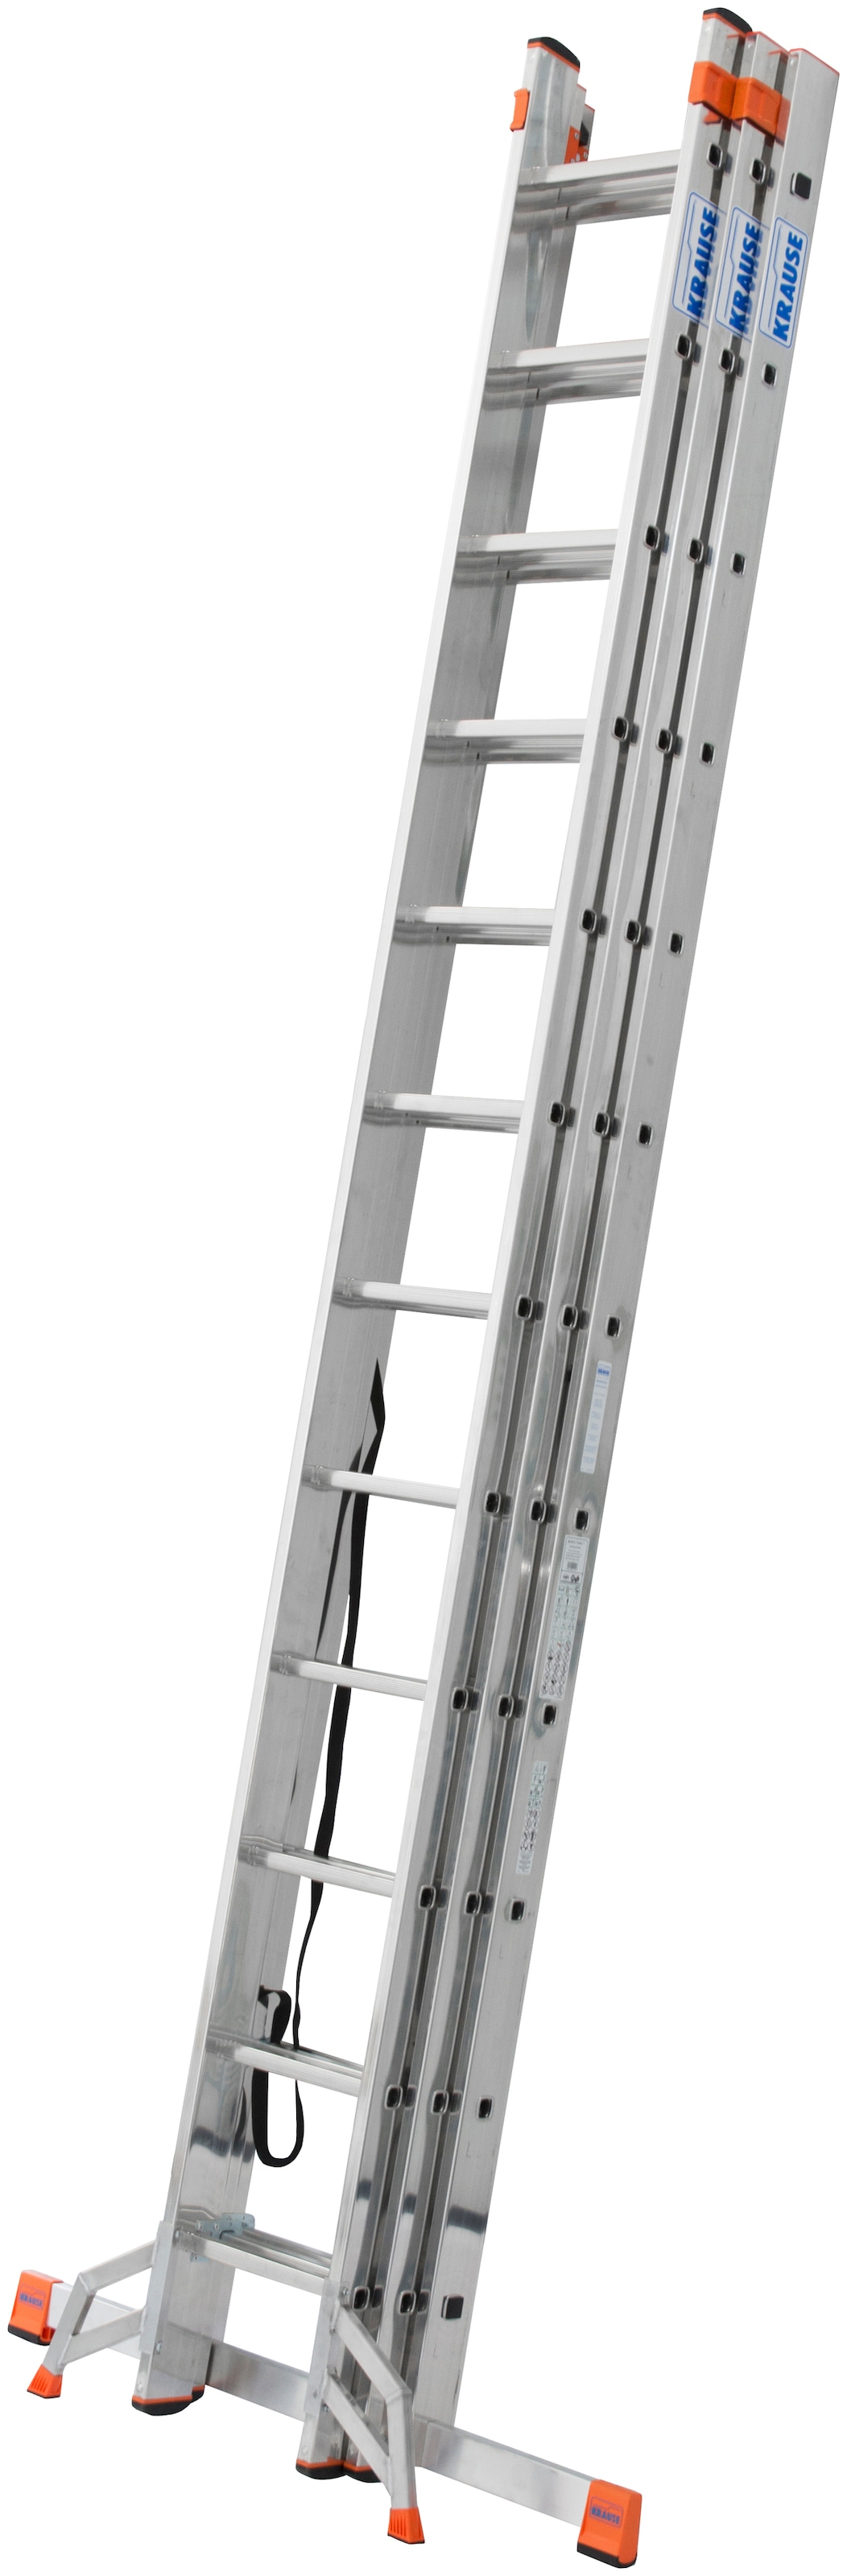 KRAUSE Vielzweckleiter »Tribilo«, mit Leiternspitzen, 3x12 Sprossen